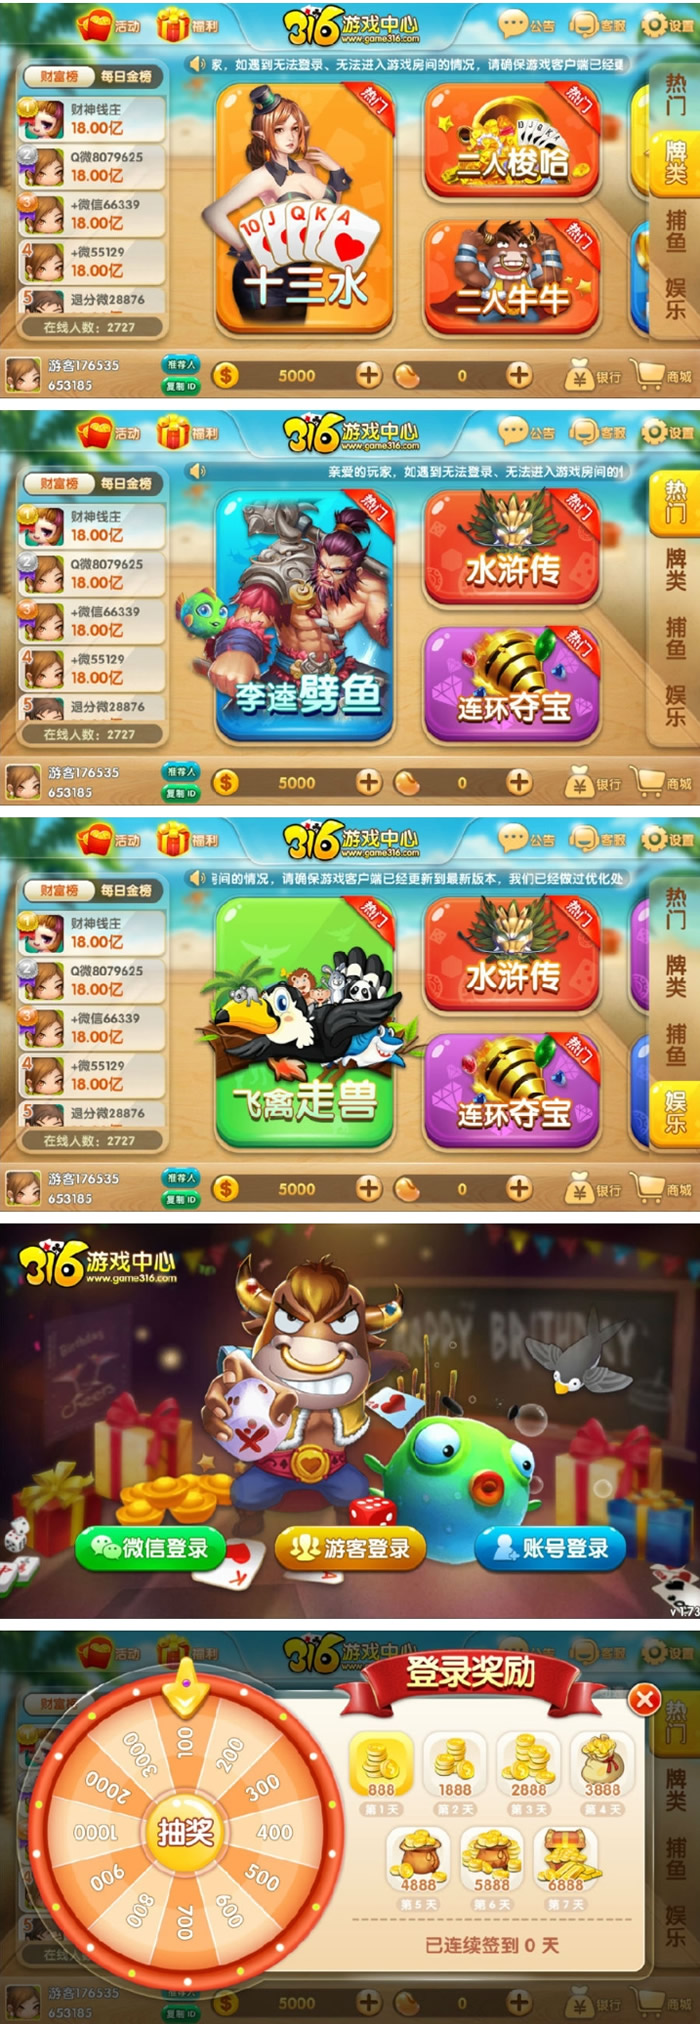 网狐荣耀版二次开发316娱乐游戏平台源码插图